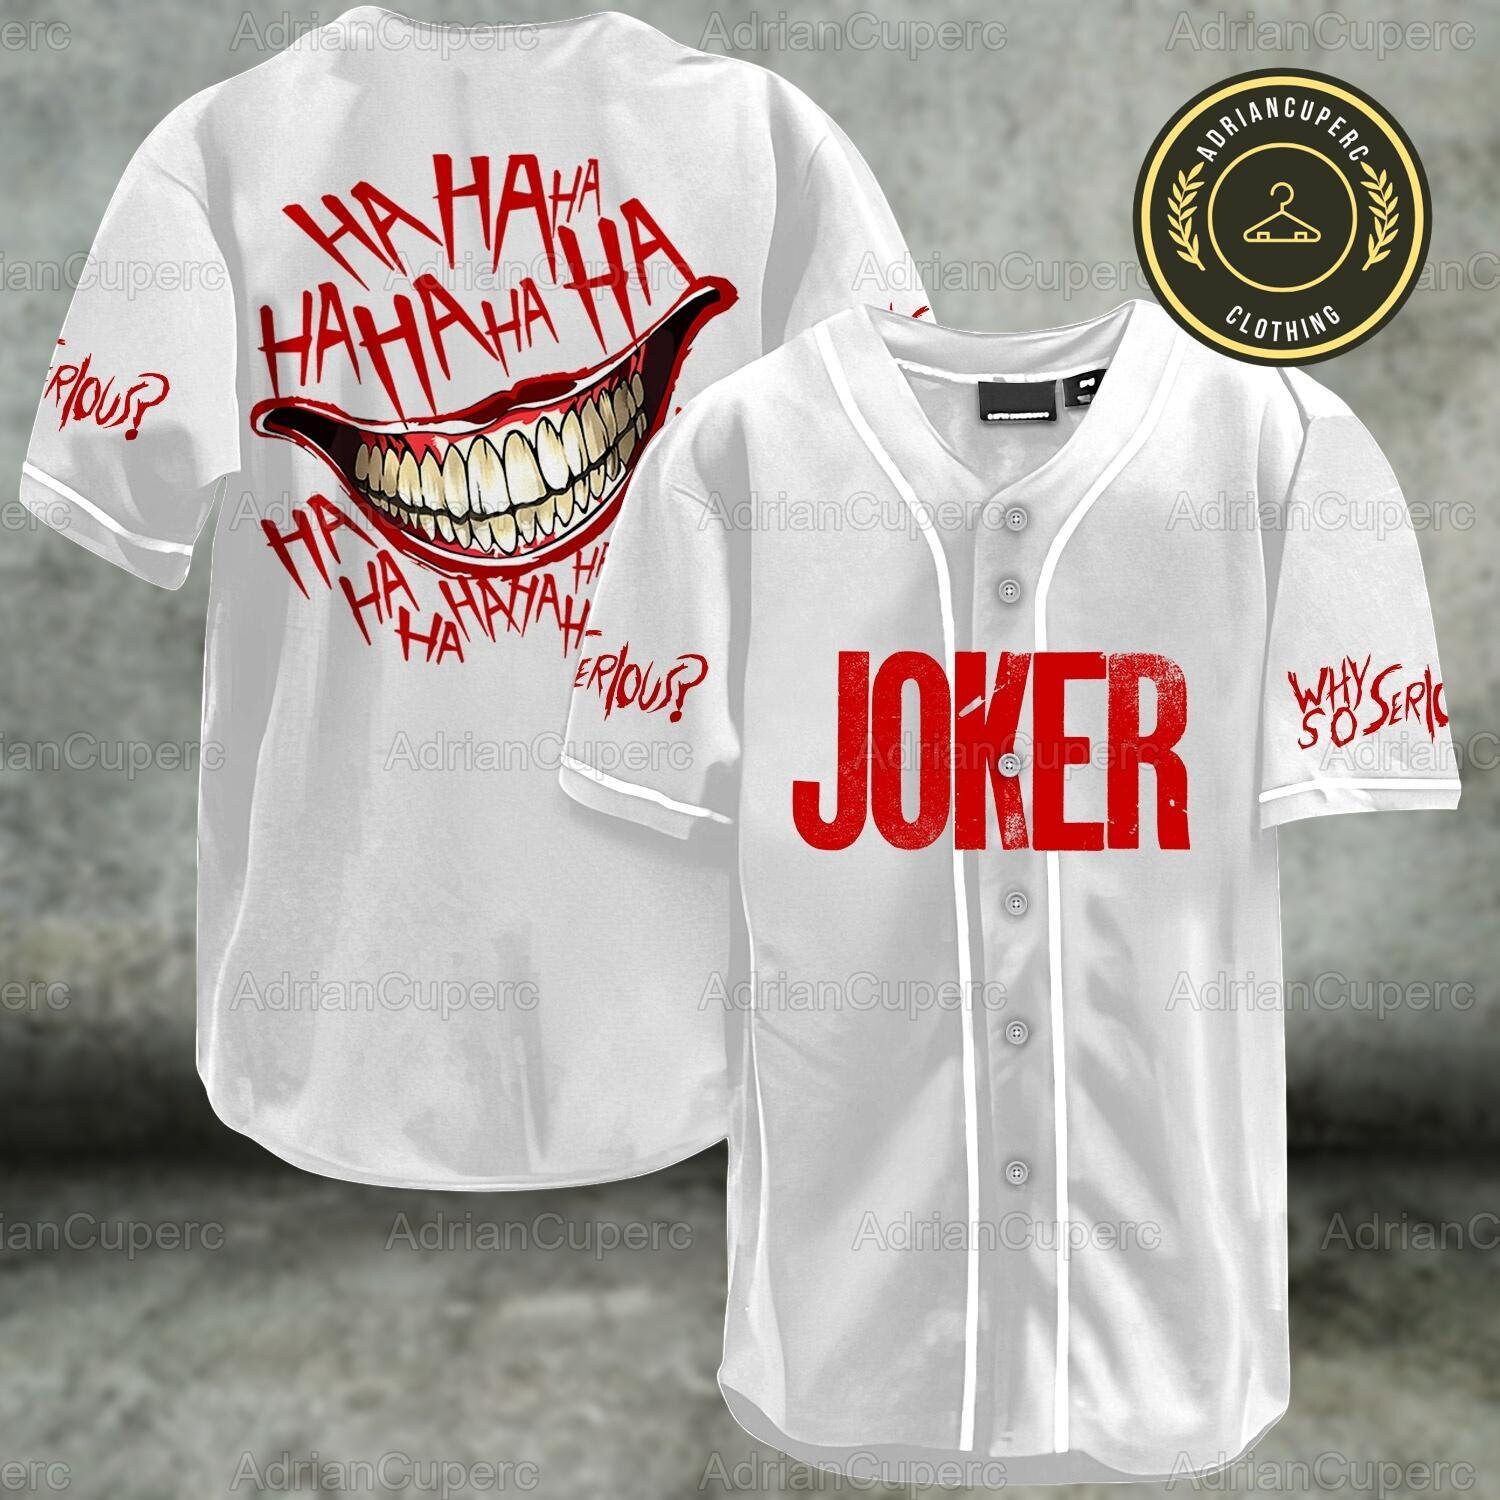 Joker Baseball Jersey, Joker Baseball Shirt, Joker Jersey Shirt